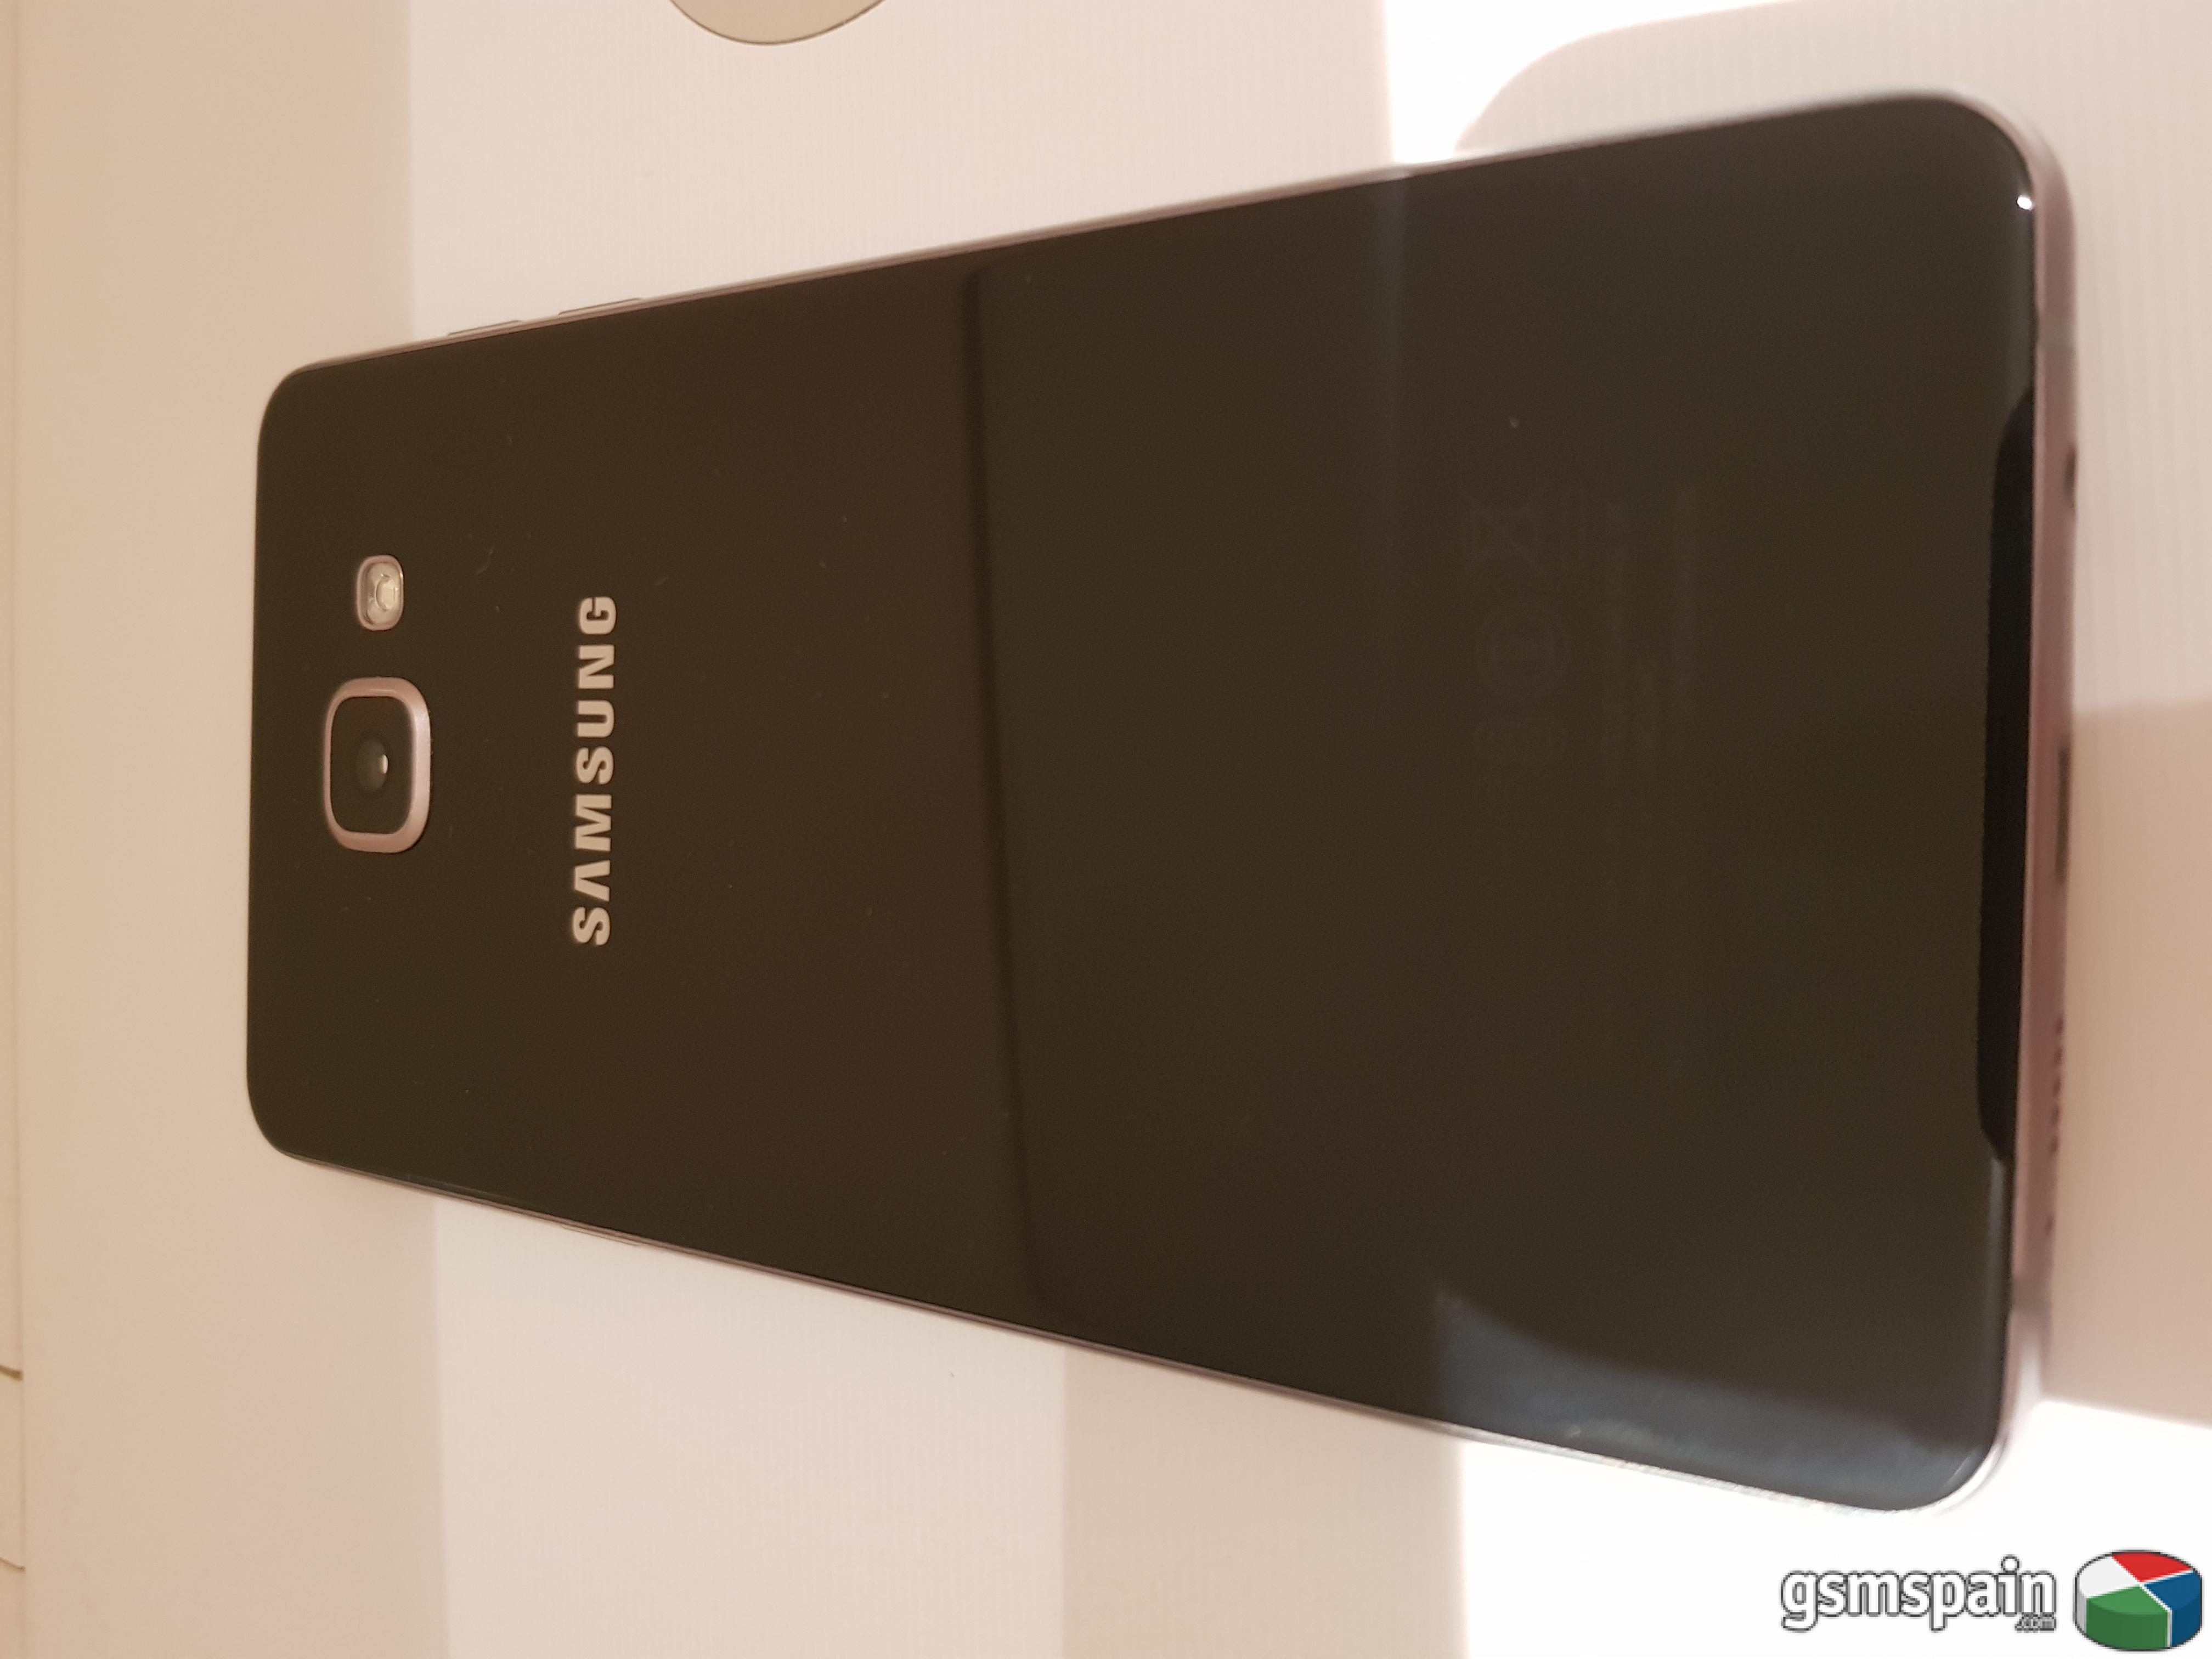 [VENDO] Movil Samsung Galaxy A5 2016.  Muy Buen estado. Precio increible